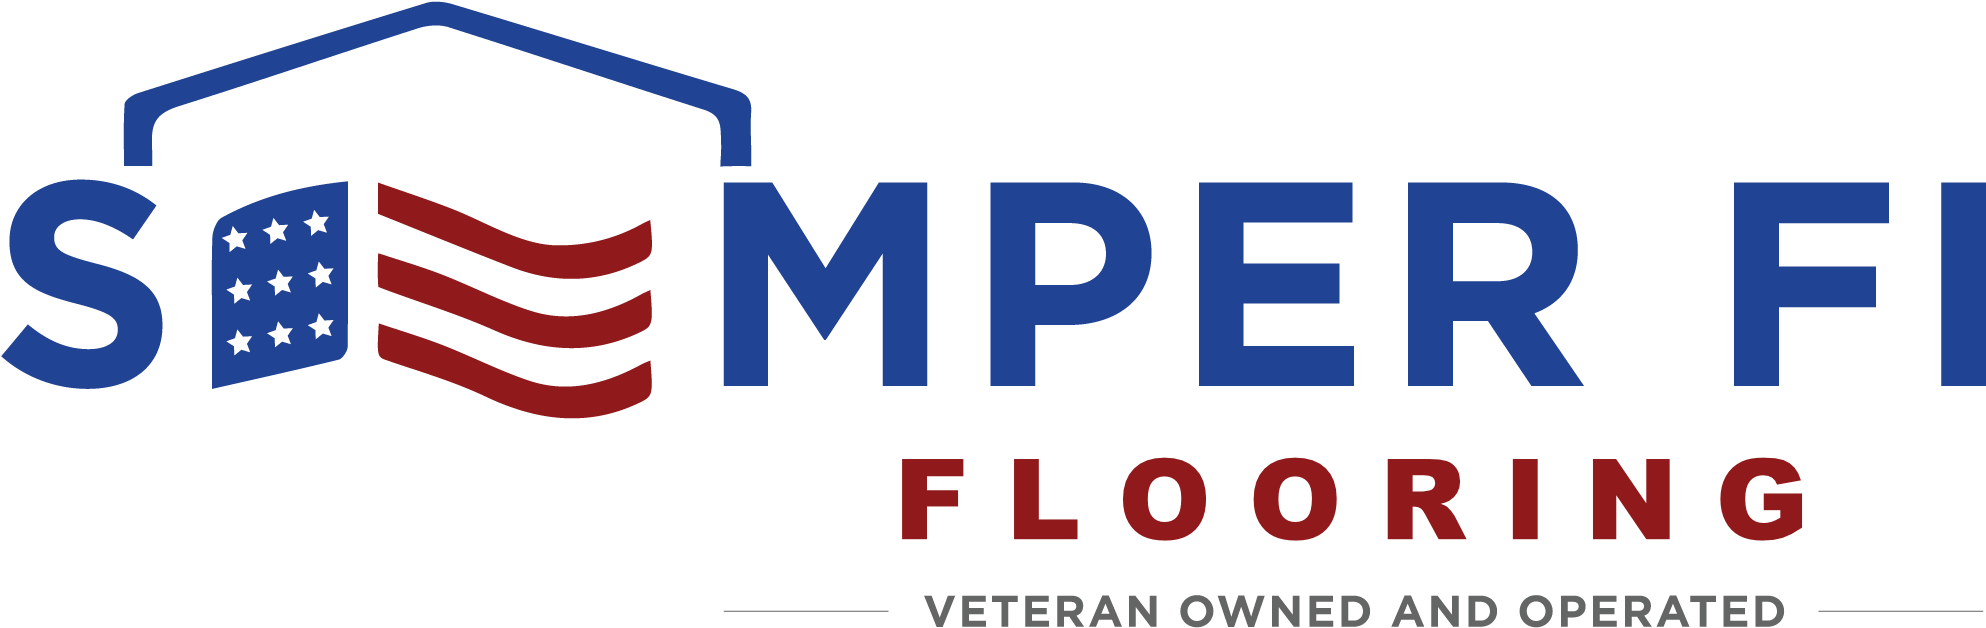 Semper Fi Flooring Clipart (2079x683), Png Download